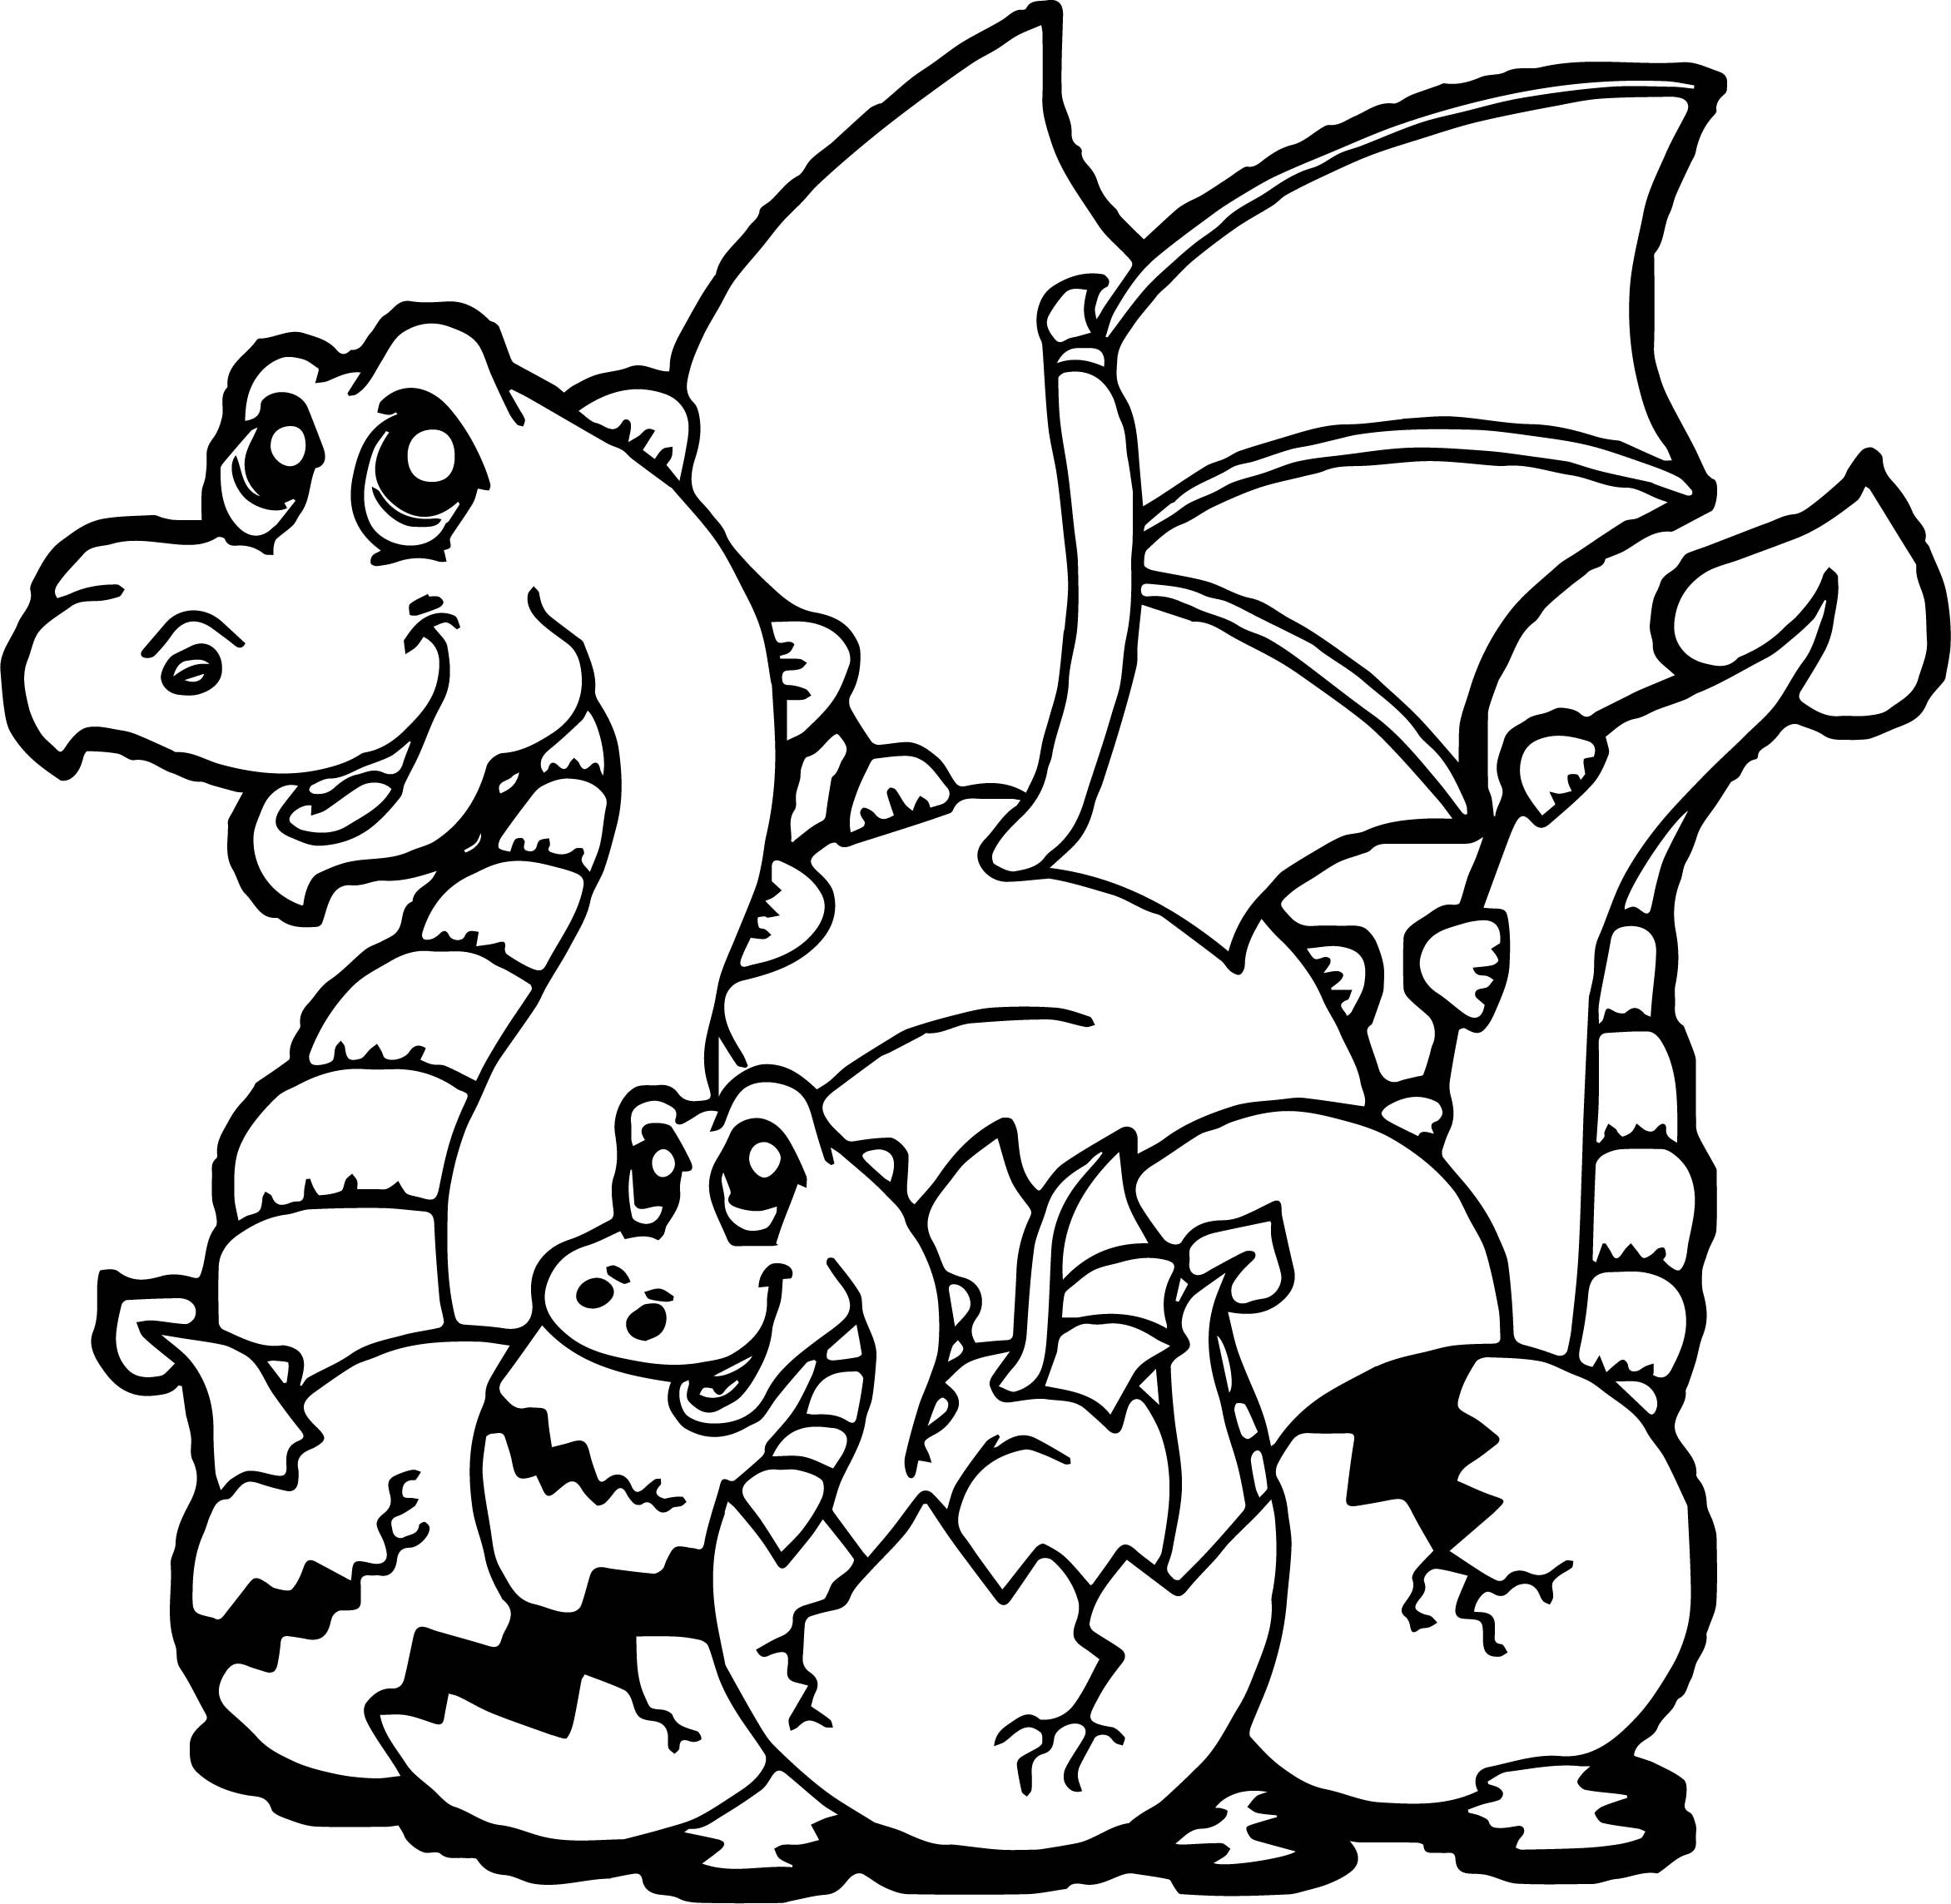 Baby Dragon Coloring Page
 Baby Dragon Cartoon Coloring Page